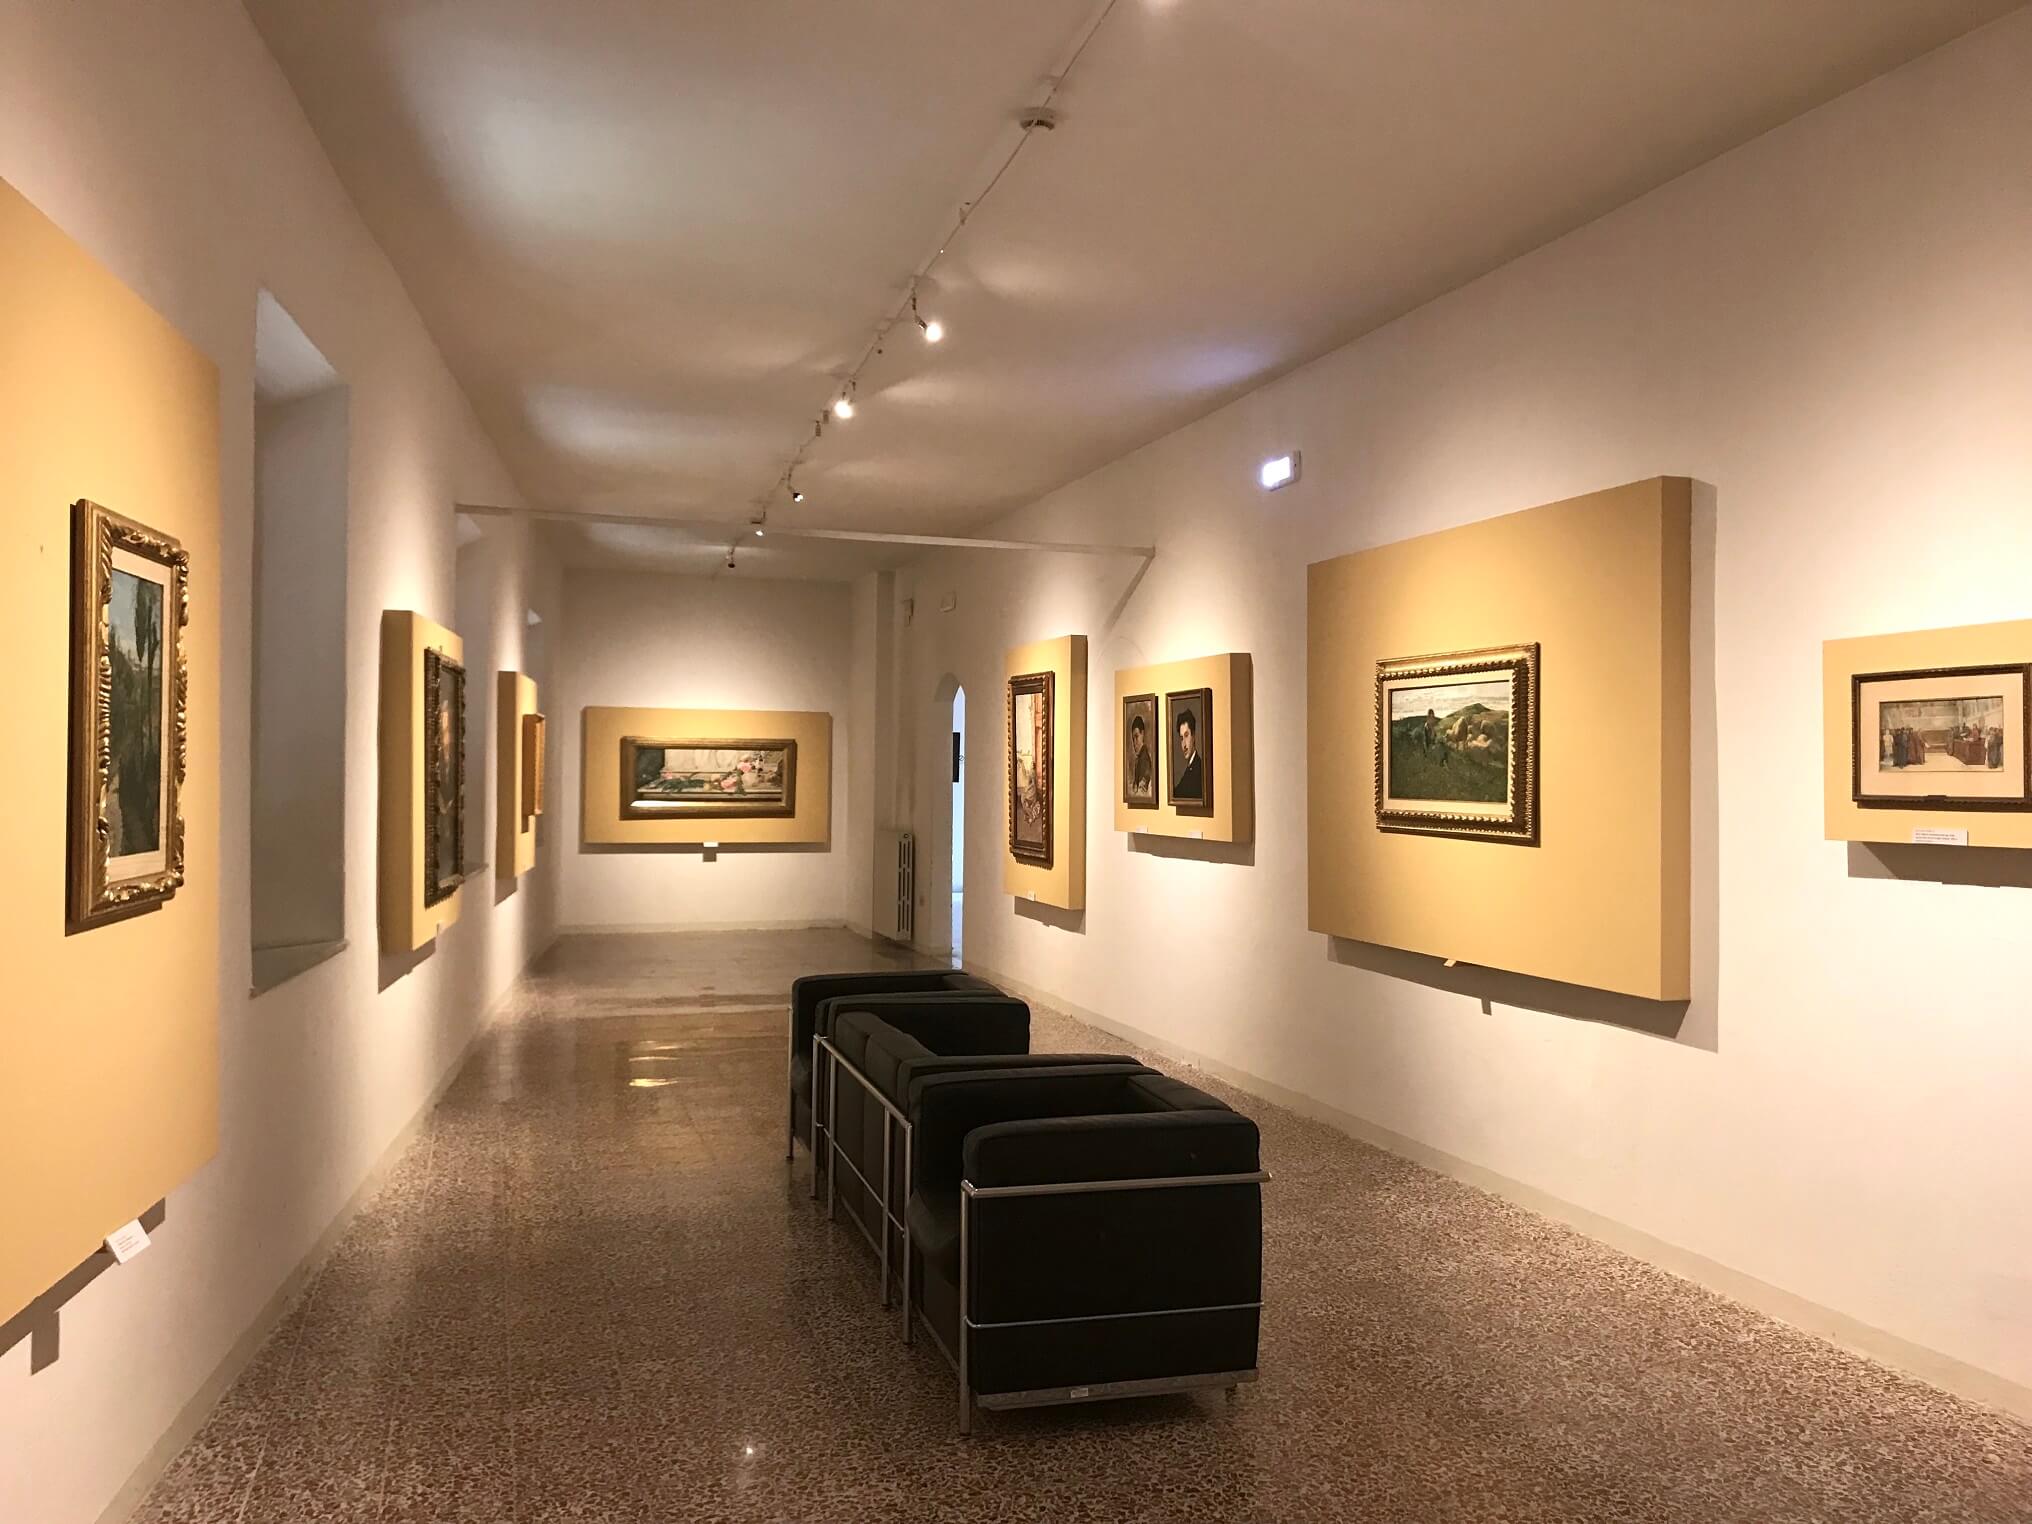 galleria-di-arte-moderna-e-contemporanea-raffaele-de-grada-siena